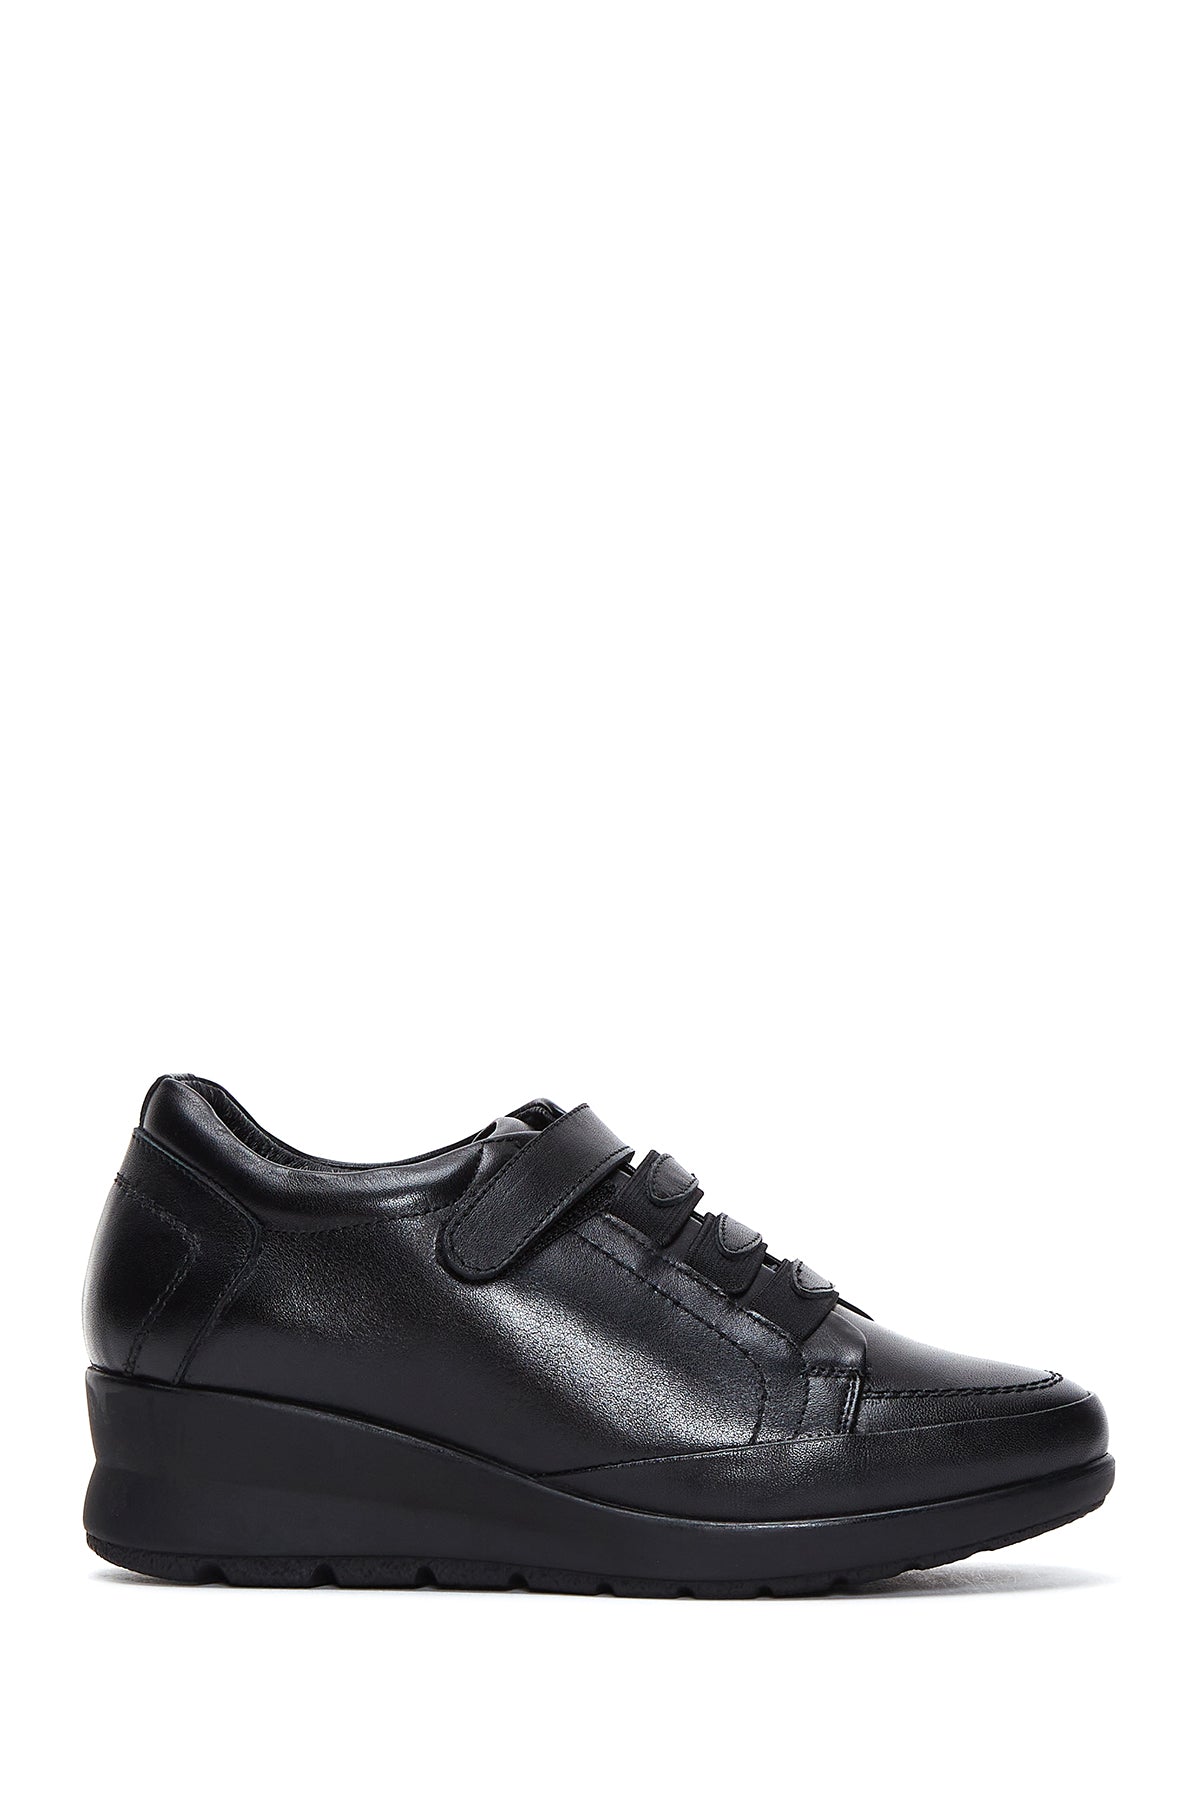 Kadın Siyah Deri Dolgu Topuklu Comfort Ayakkabı 23WFD411318 | Derimod